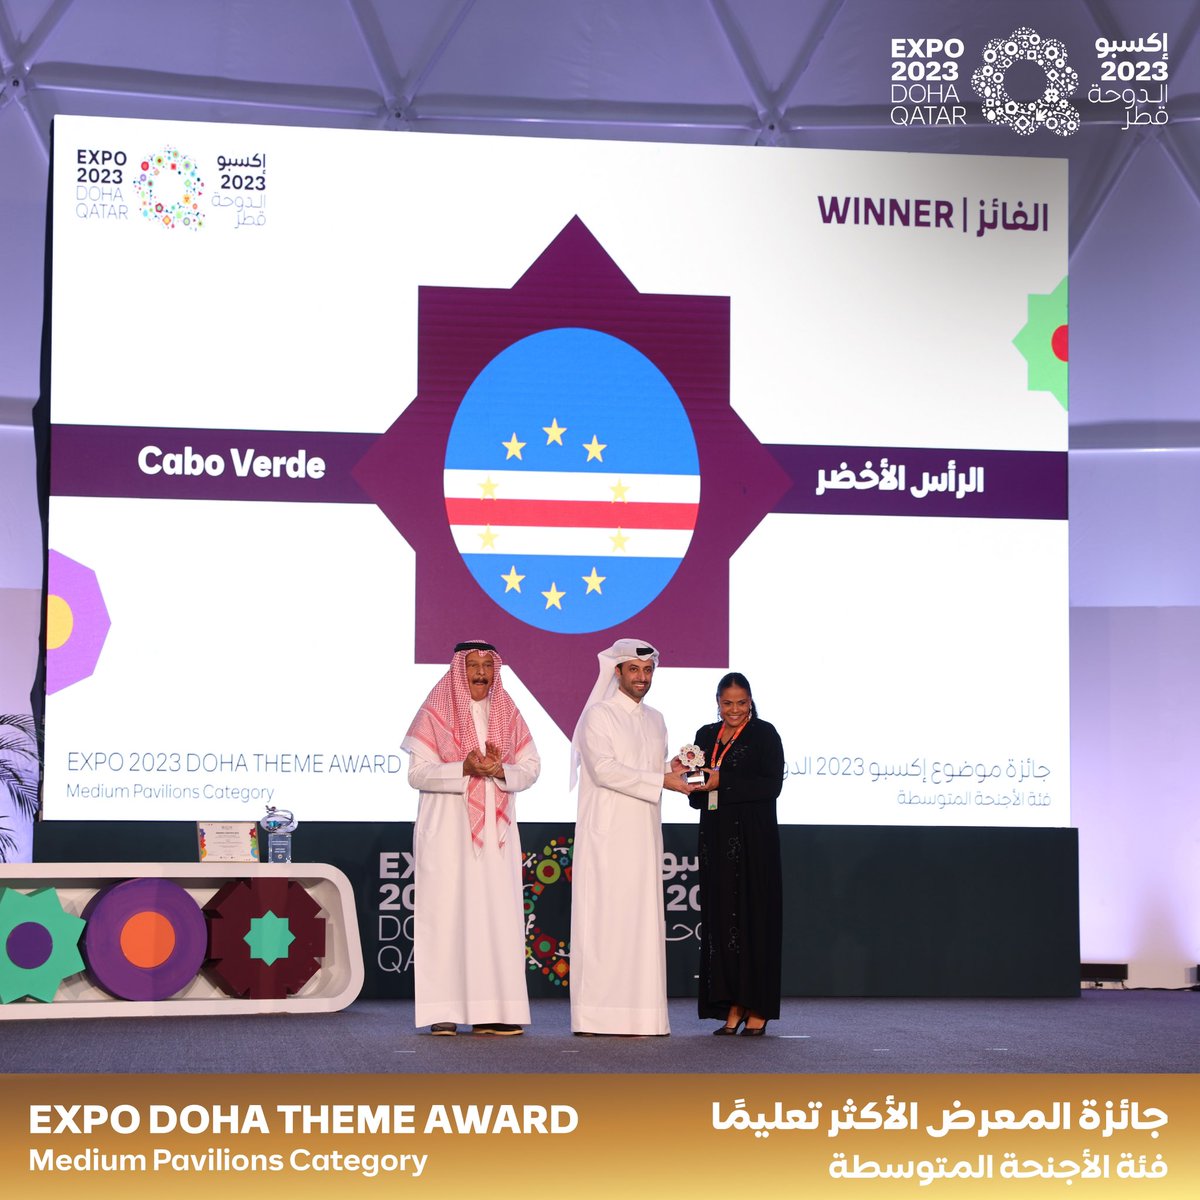 تهانينا للرابحين بجائزة موضوع #إكسبو_2023_الدوحة! أبدعوا في تقديم حلول مستدامة لتحويل الصحراء إلى خضراء، مُساهمين بشكل ملموس في مستقبل كوكبنا. عمان - فئة الأجنحة المبنية ذاتياً السودان - فئة الأجنحة الكبيرة الرأس الأخضر - فئة الأجنحة المتوسطة Congratulations to the winners of